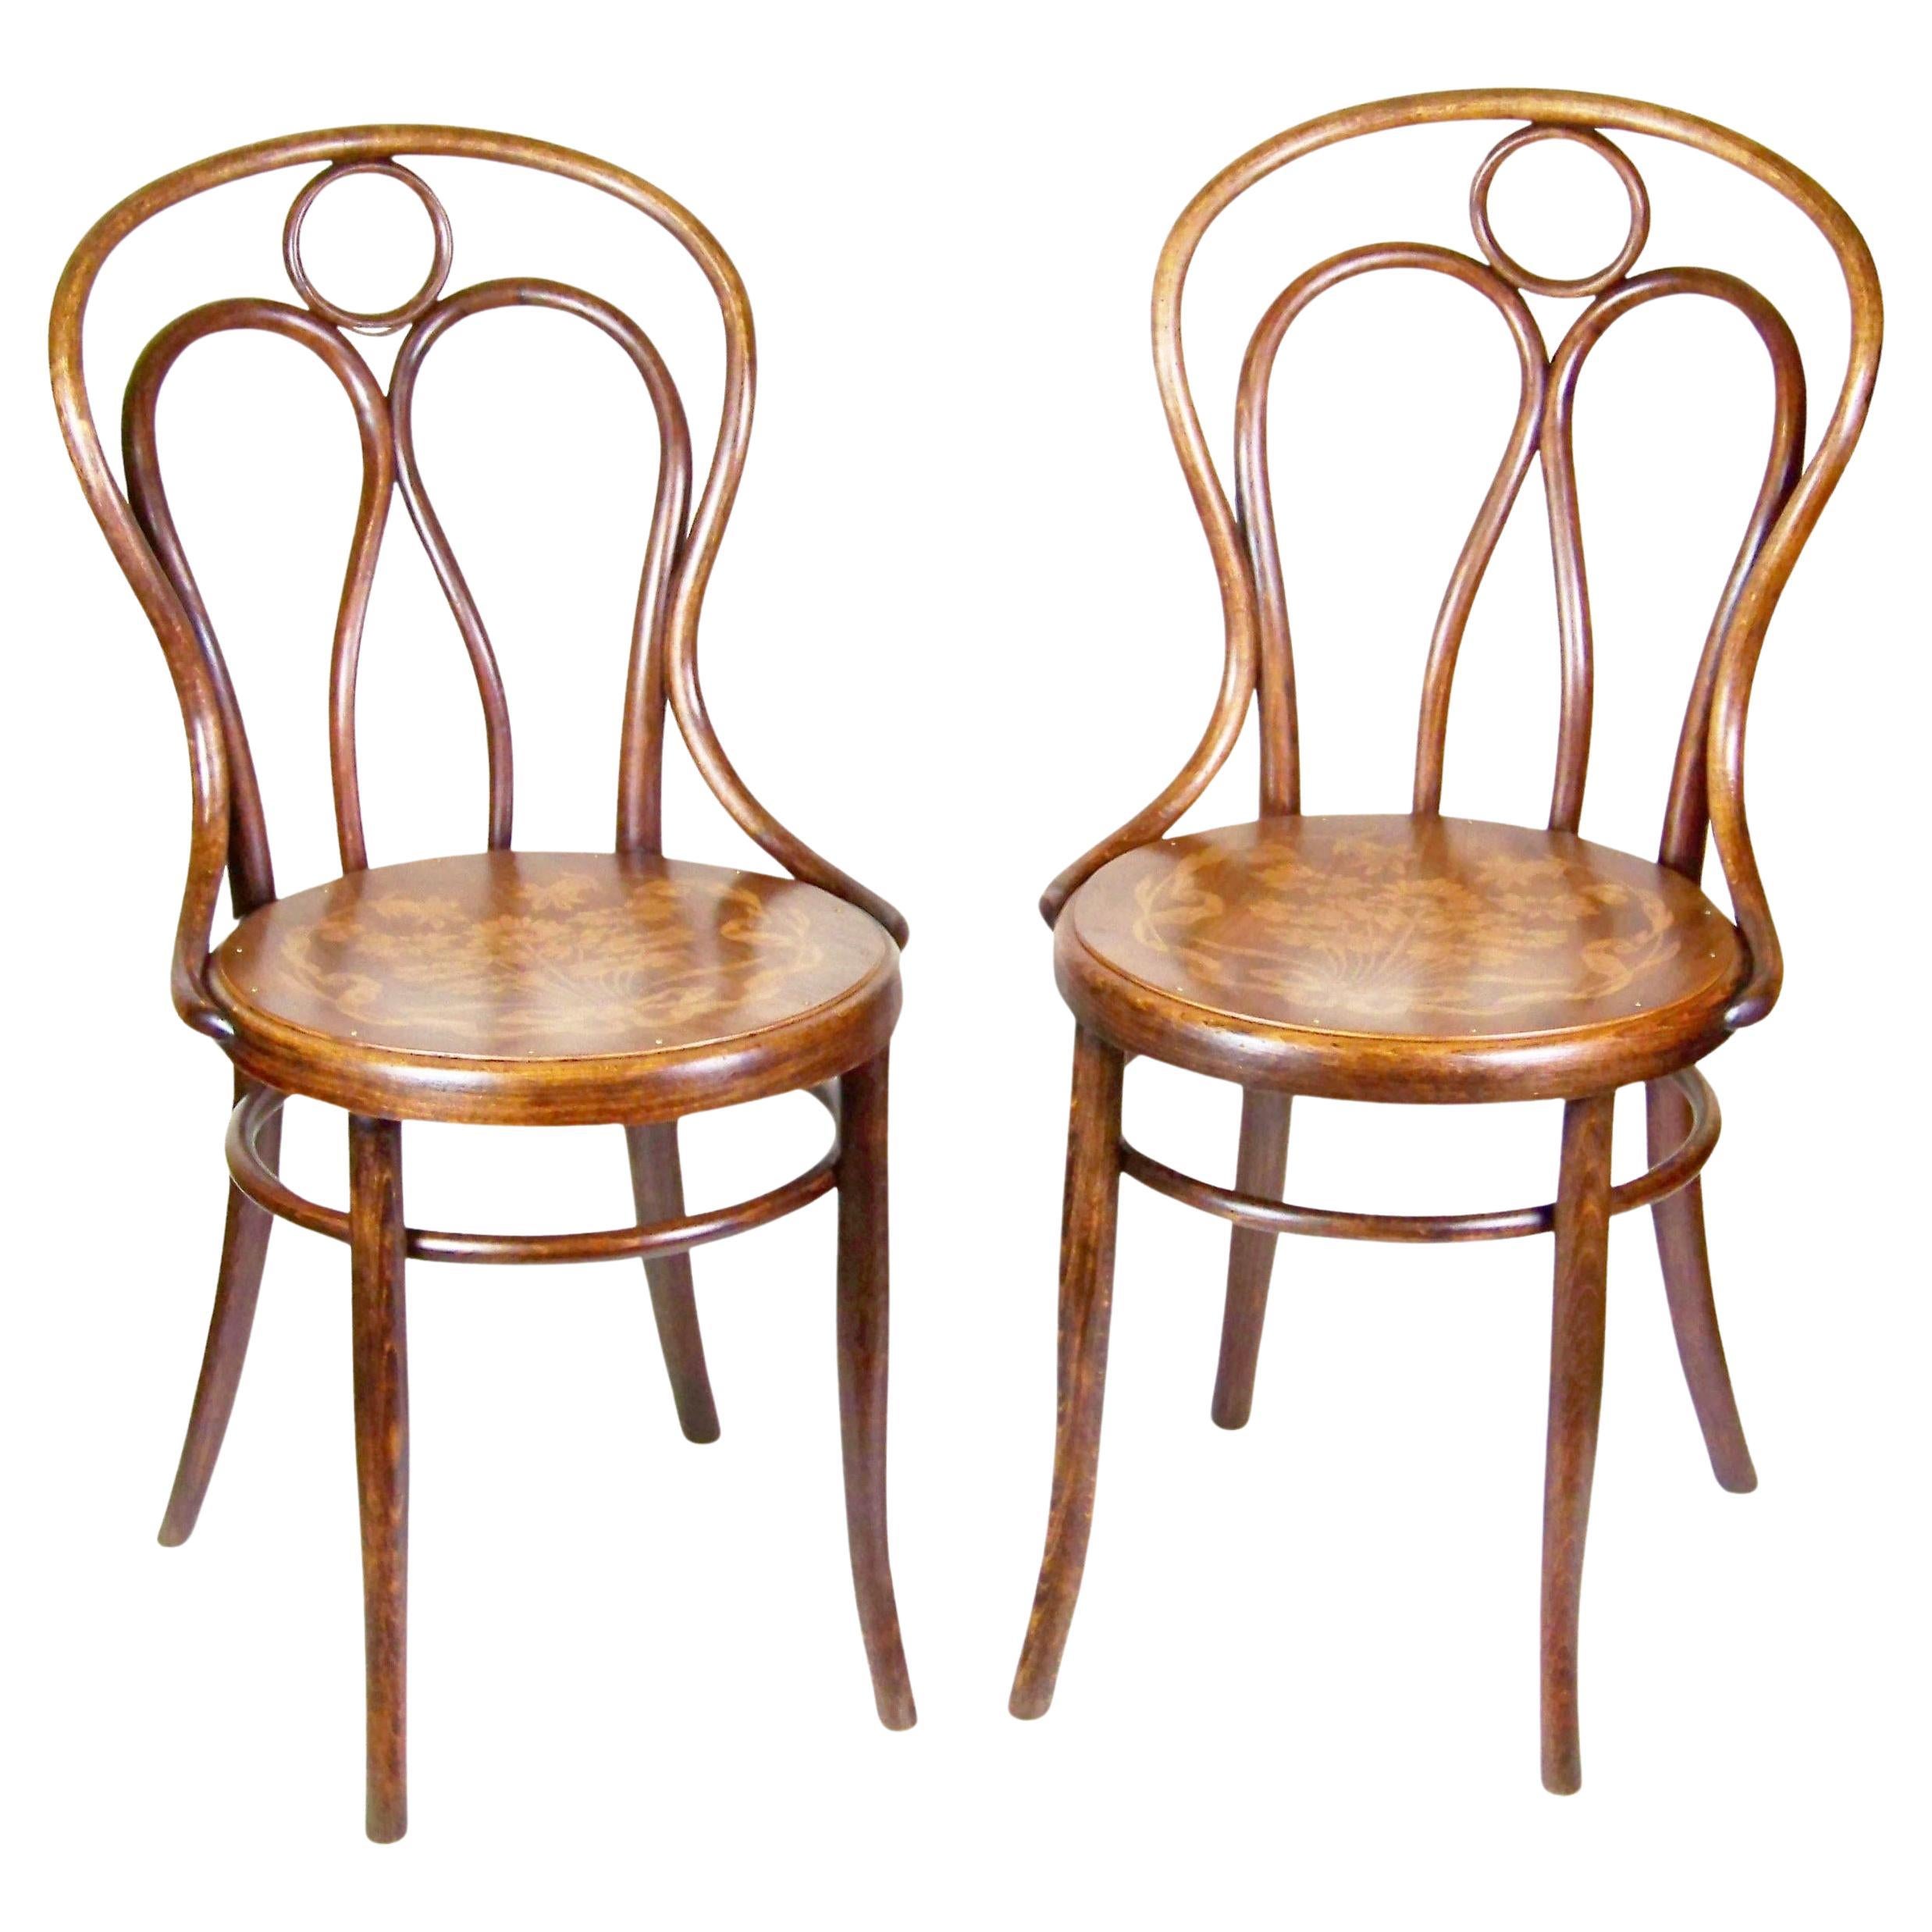 Deux chaises Thonet Nr.19, vers 1900